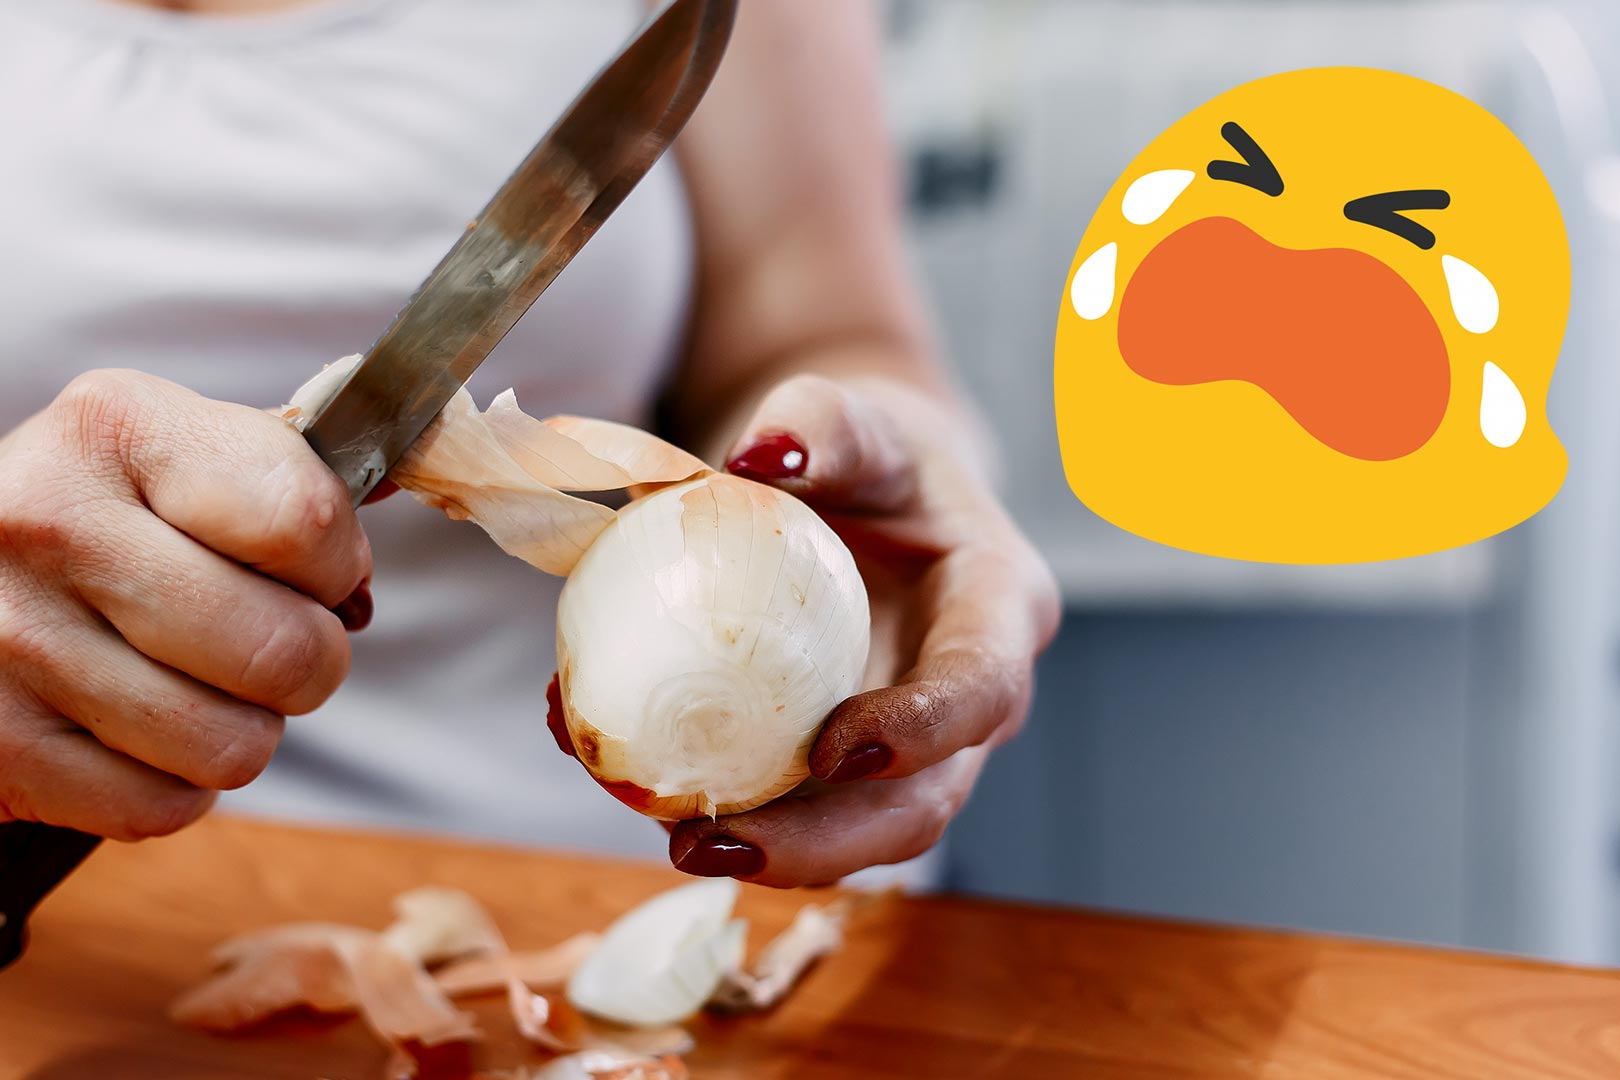 Ten prosty sposób sprawi, że nie będziesz płakać przy krojeniu cebuli. Masz go pod ręką